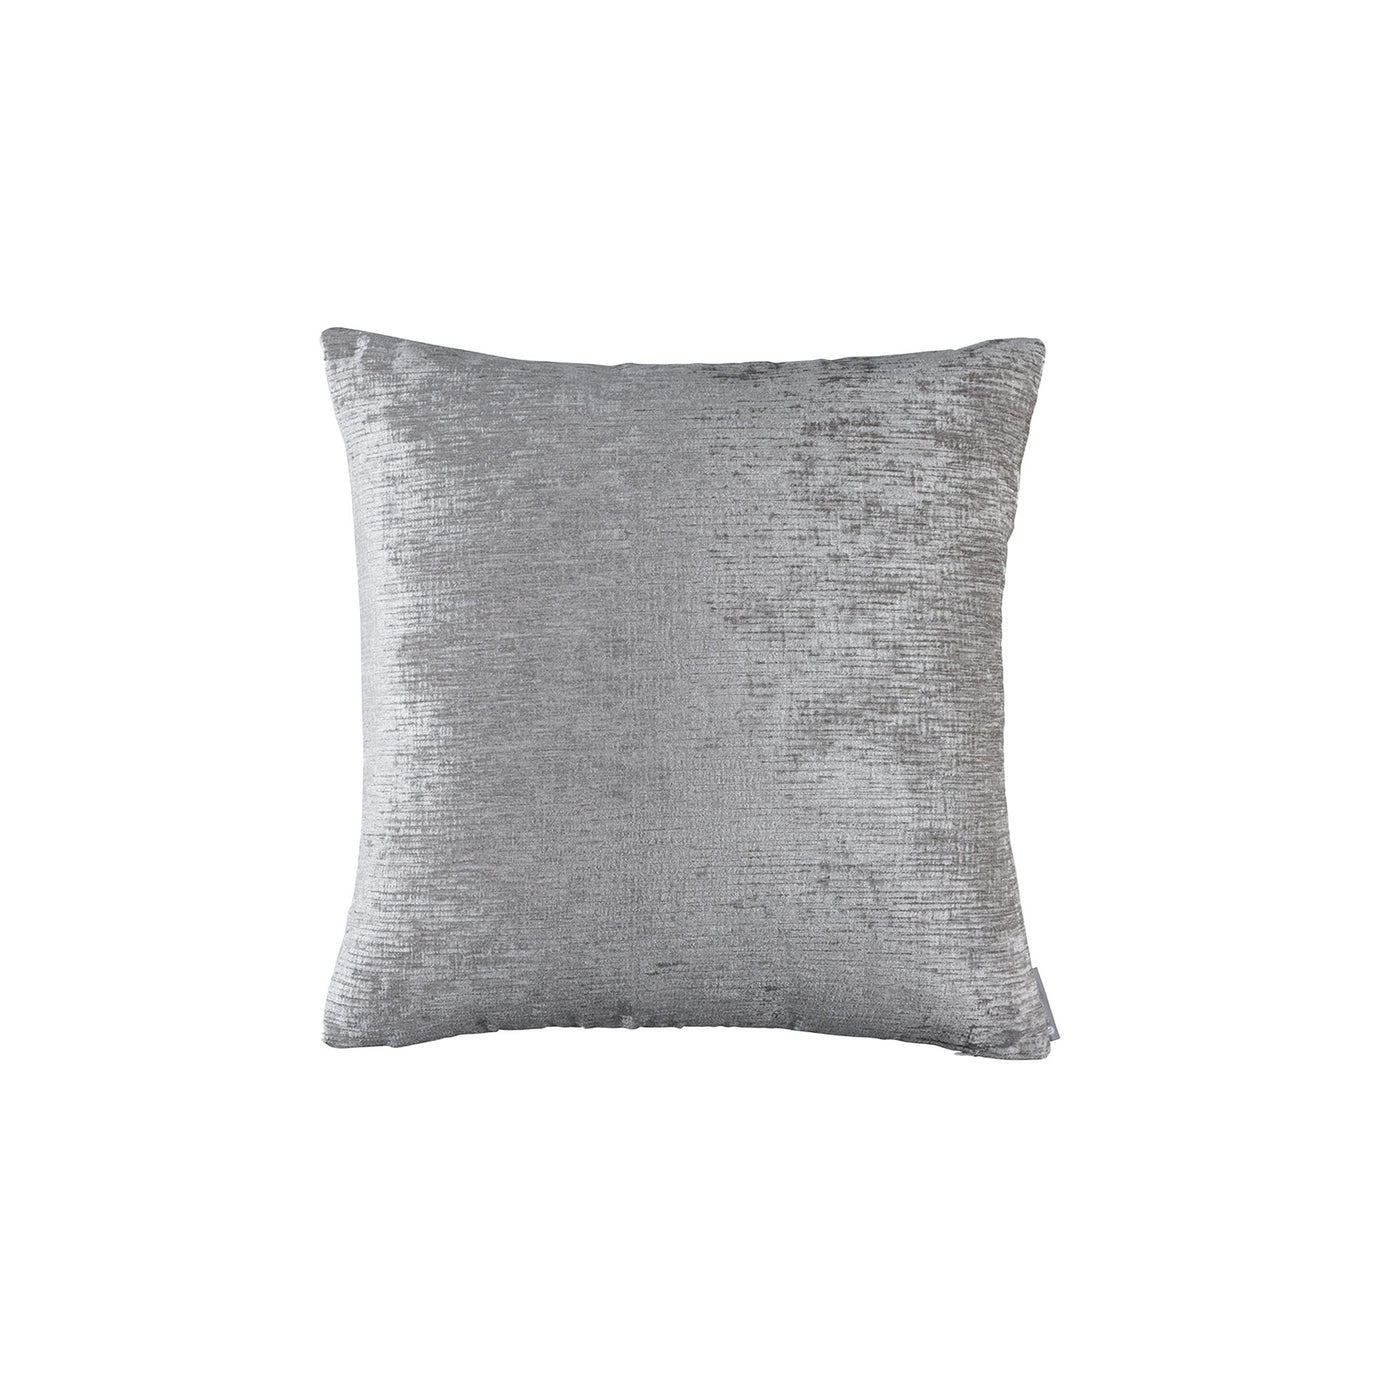 Ava Dove Large Square Pillow (24x24)